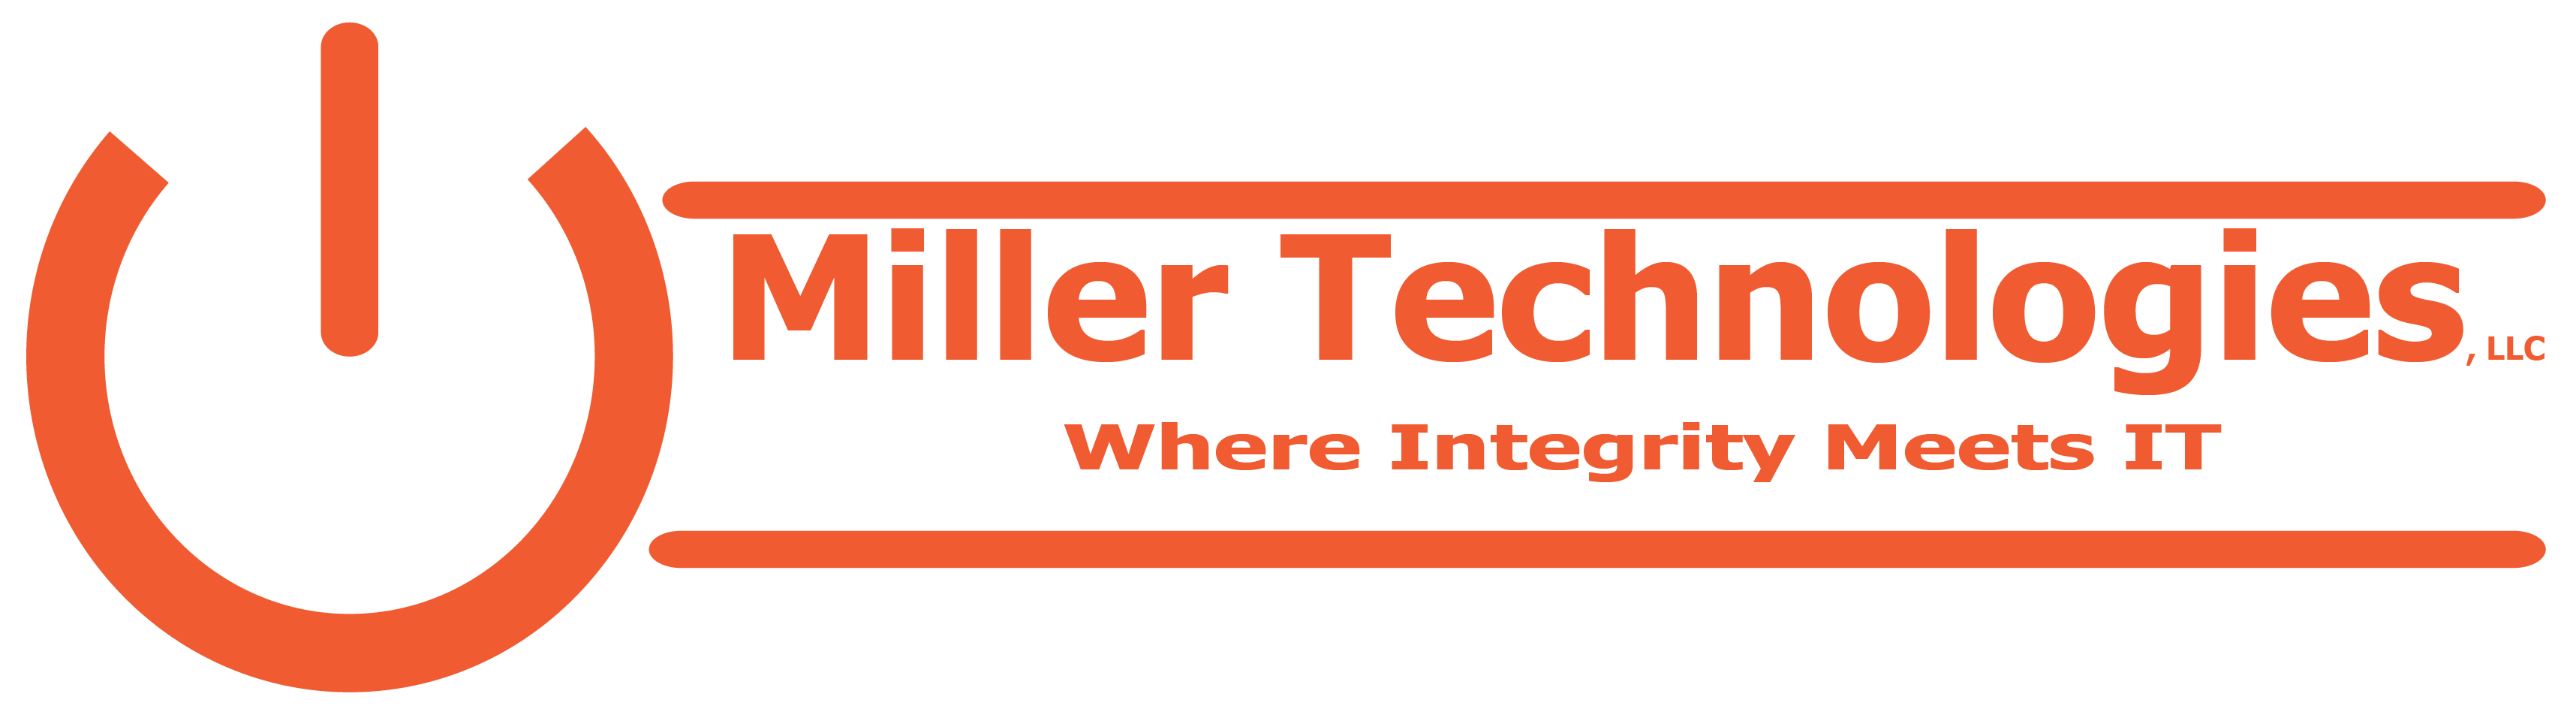 Miller Technologies LLC.